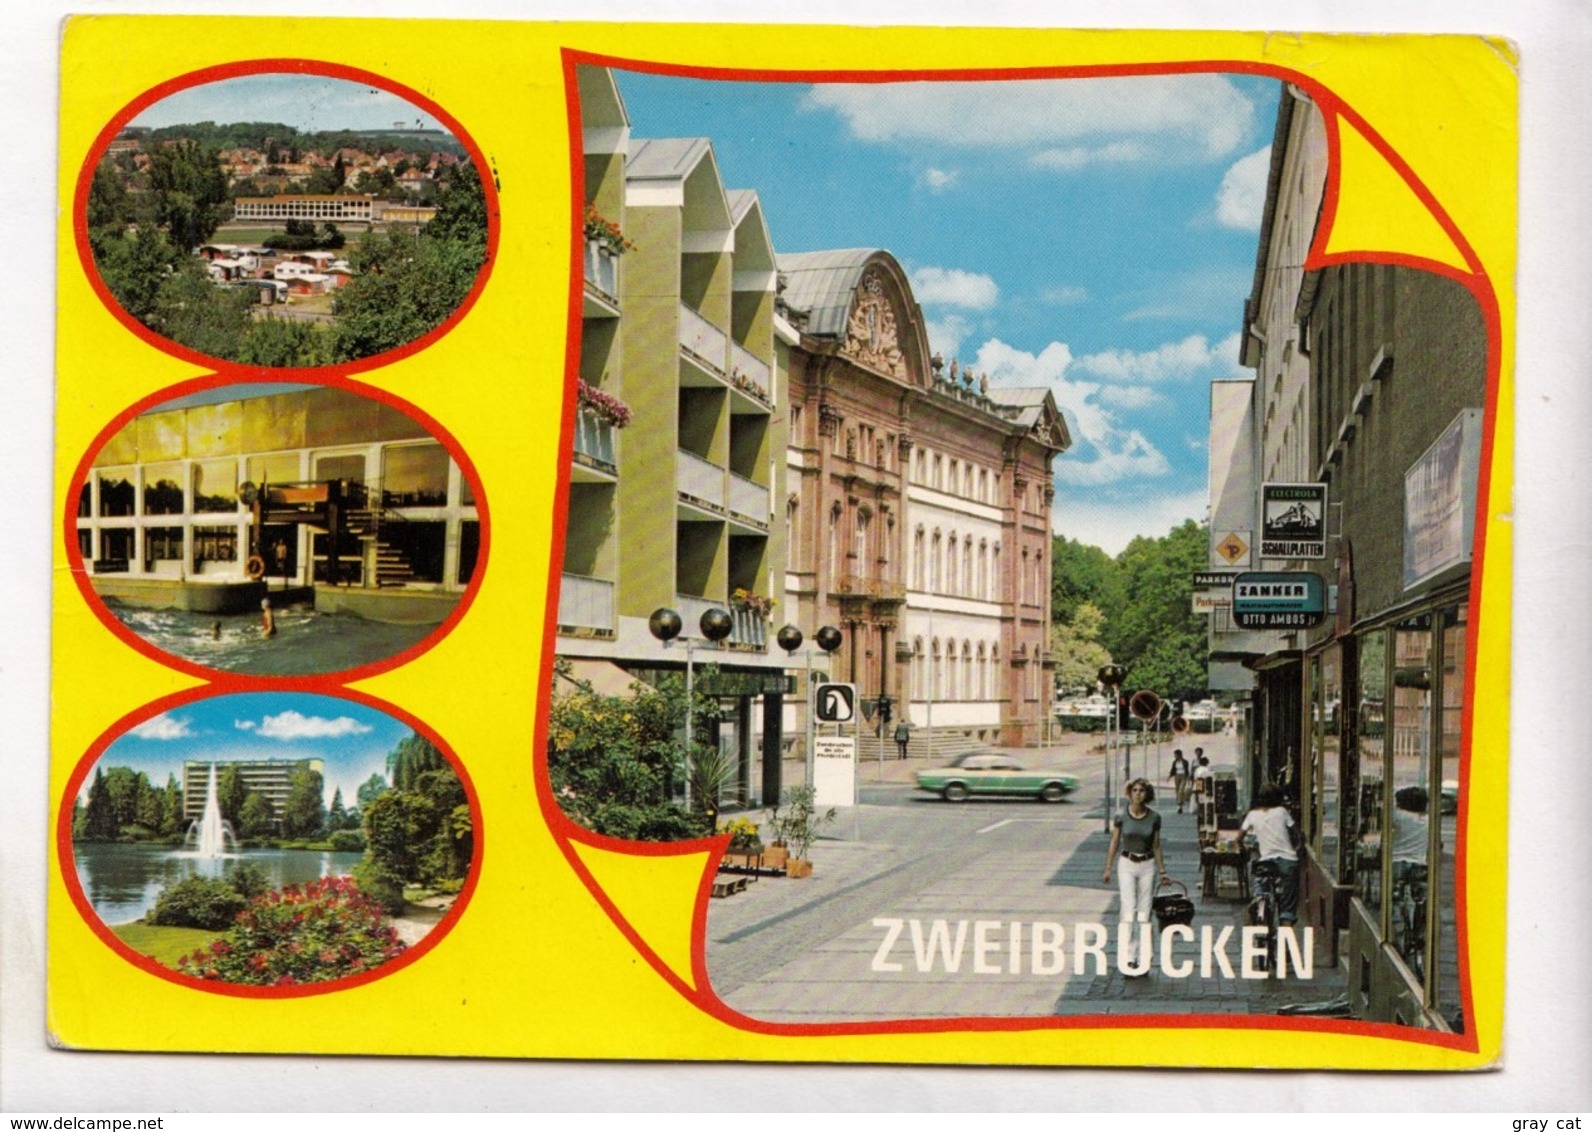 ZWEIBRUCKEN, 1988 Used Postcard [23639] - Zweibruecken